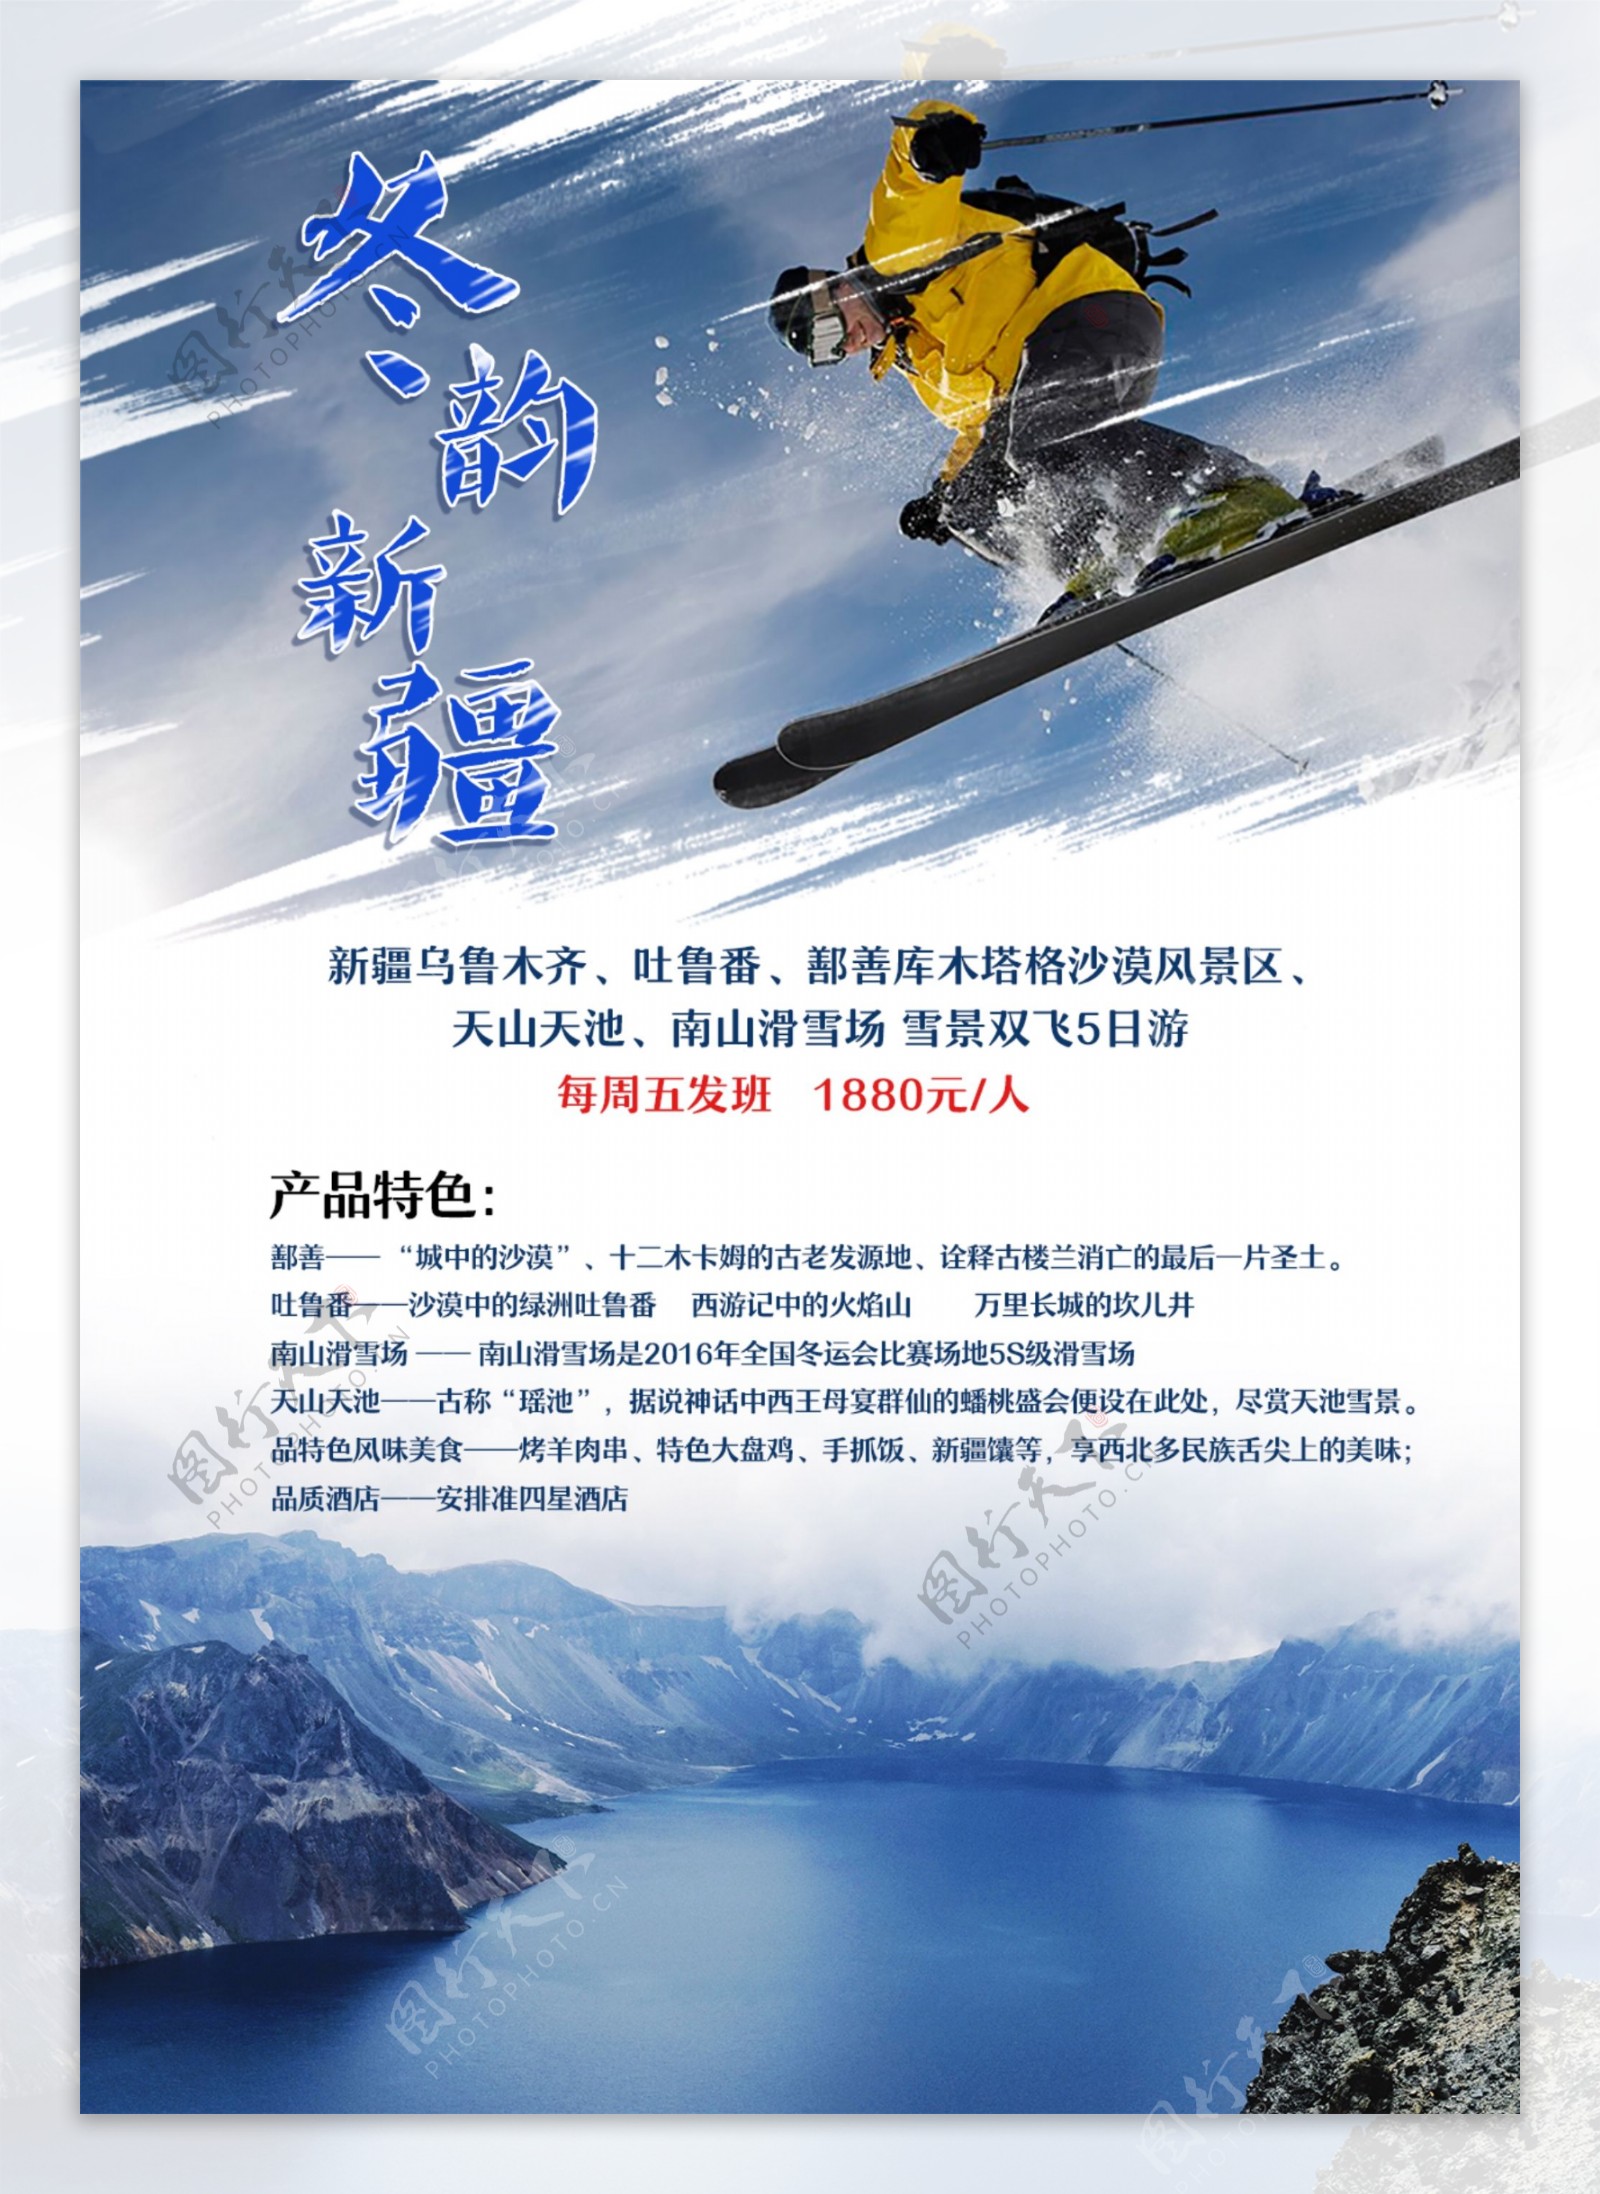 冬韵新疆滑雪天山天池